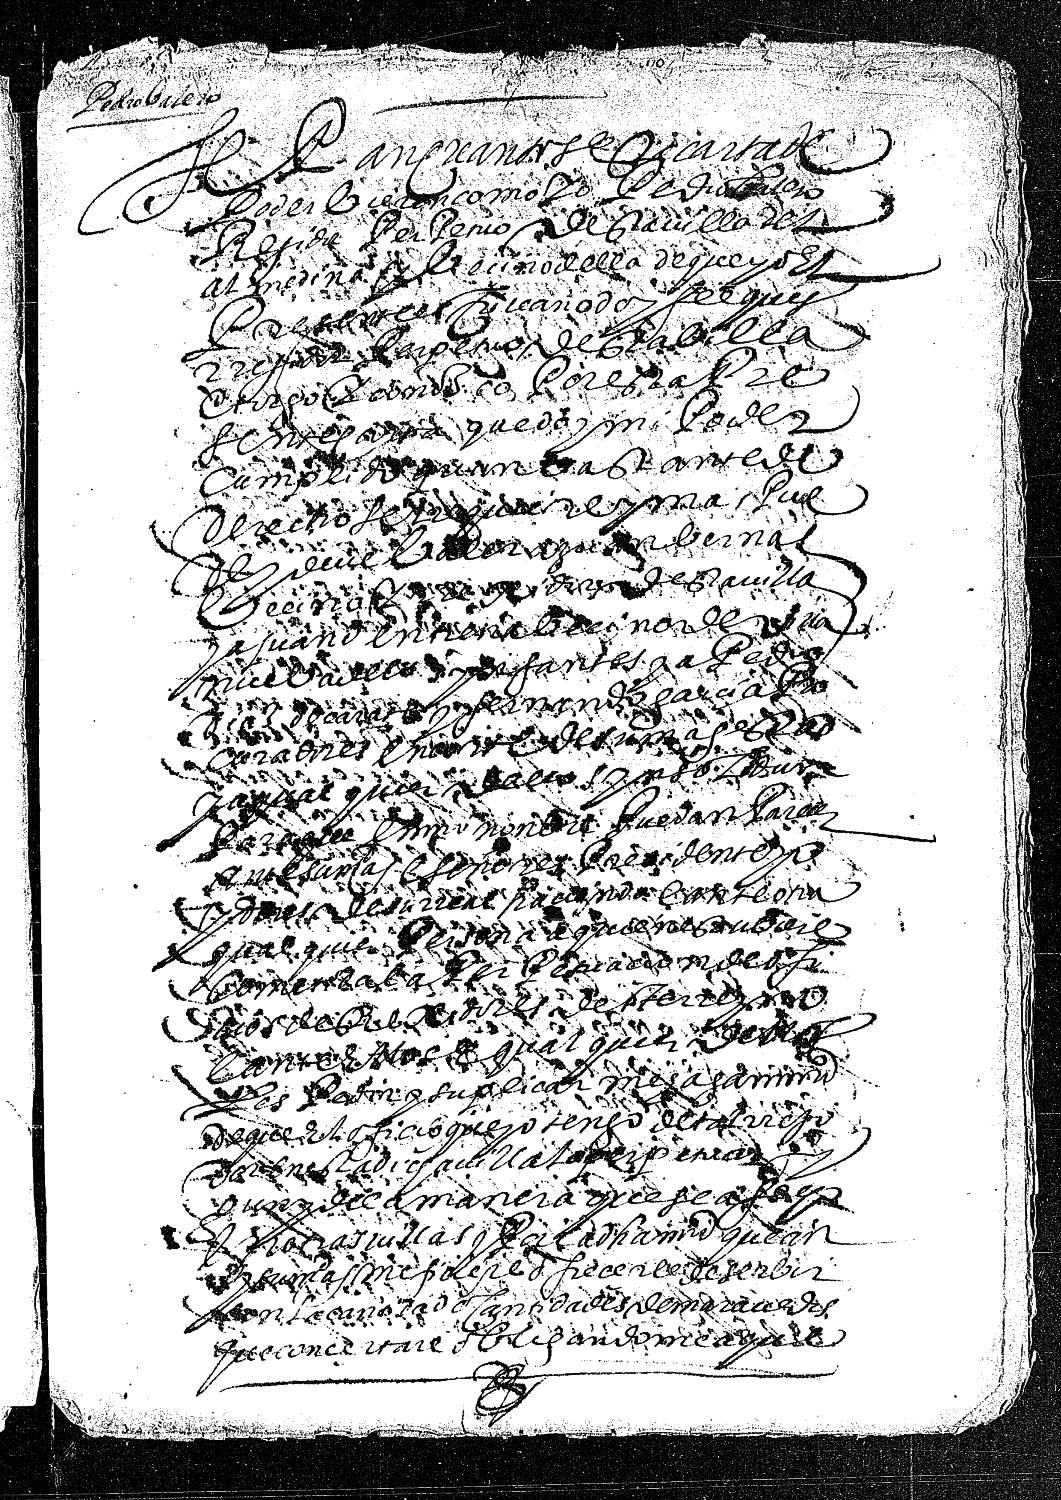 Carta de poder de Pedro Valero dada a Juan Bernal, Juan de Entrena, Pedro Díaz de Zarate y Fernando García, procuradores en la Corte, para que le consigan la perpetuación de su oficio de regidor de Almedina.